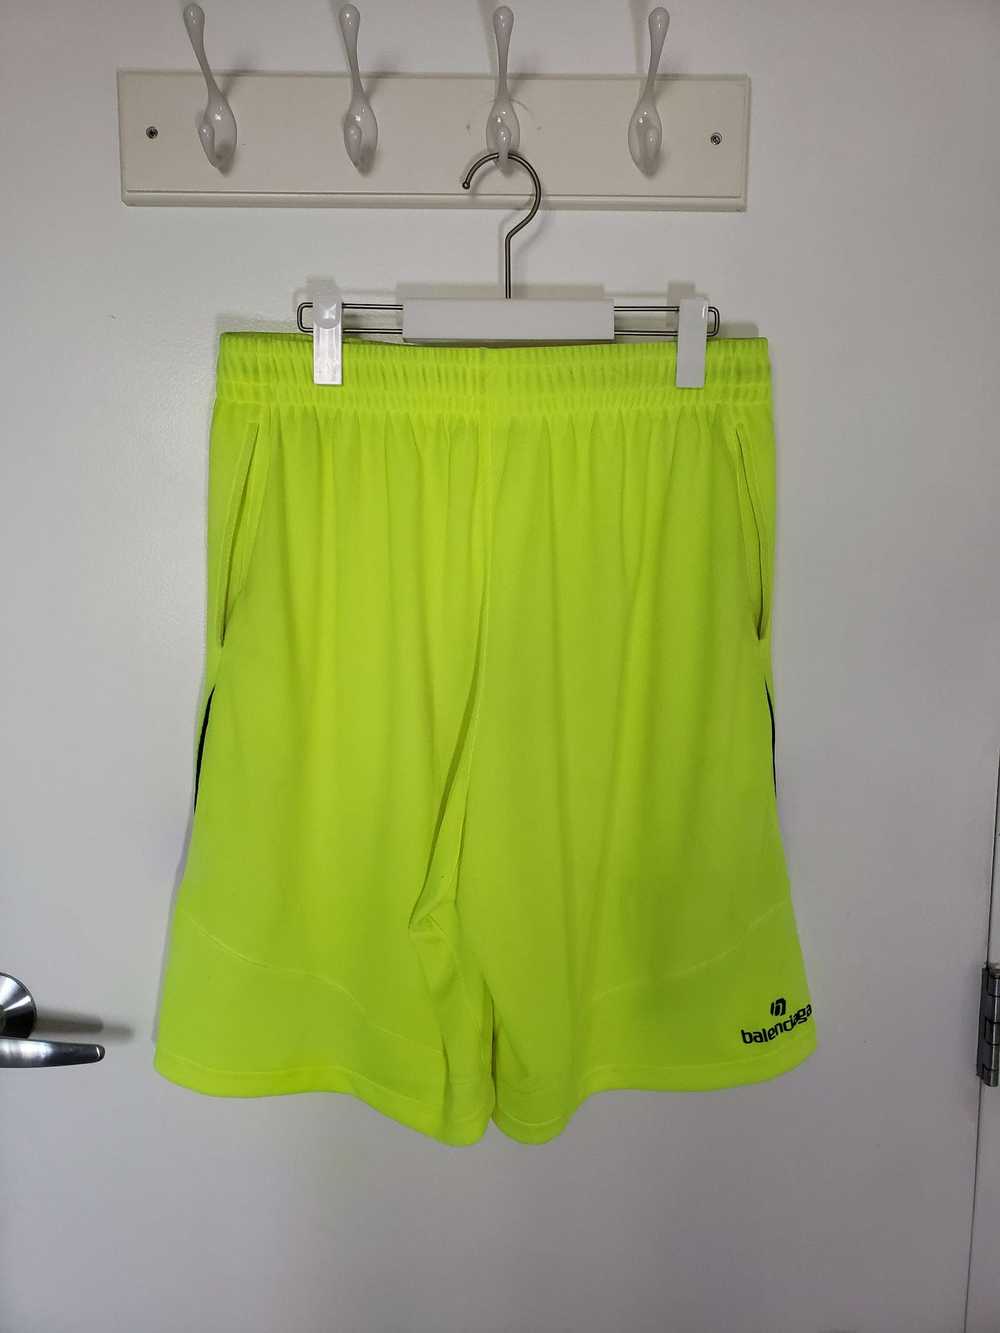 Balenciaga Winter 20 Neon Soccer Shorts - image 5